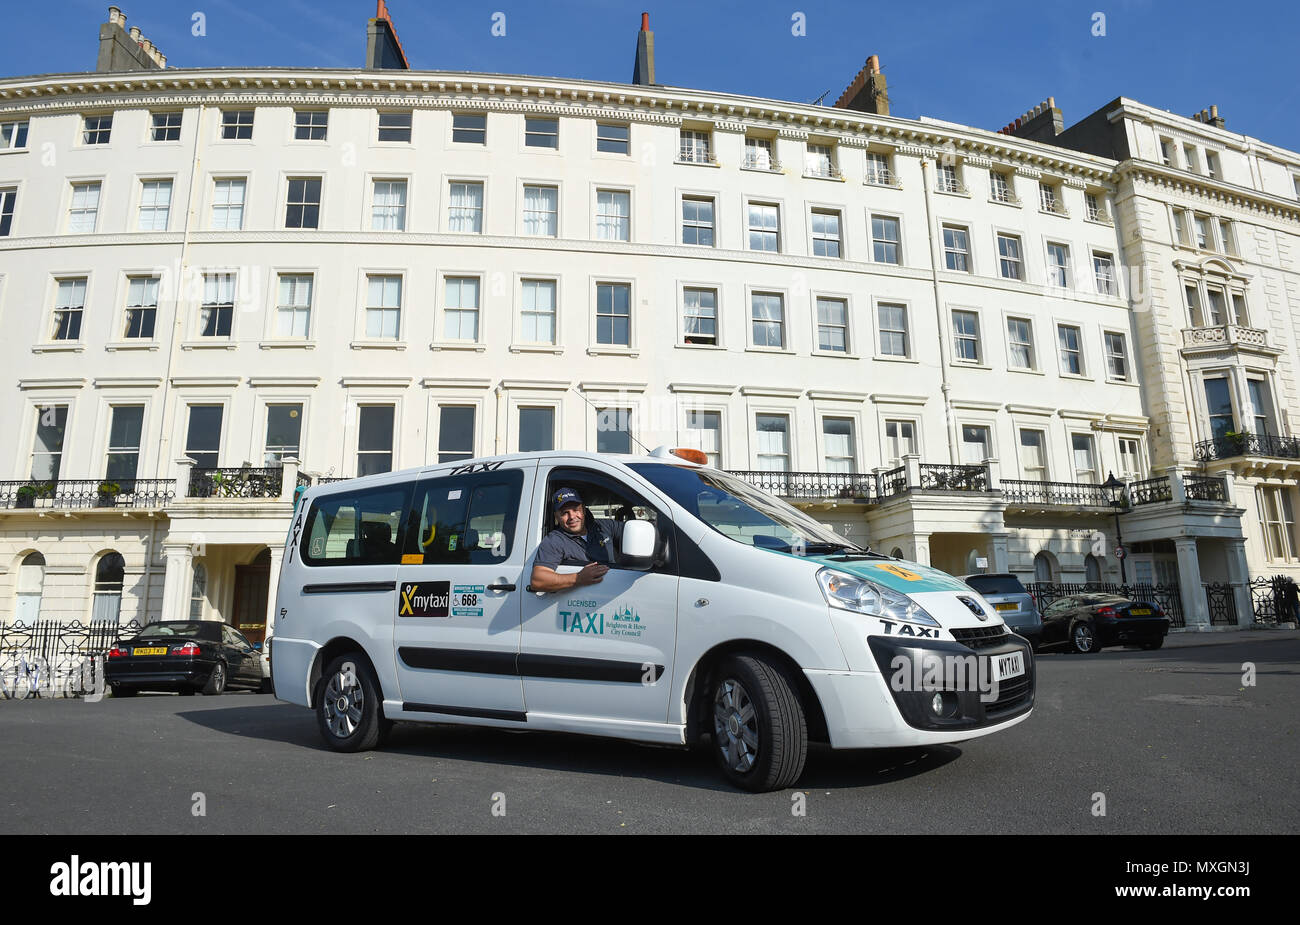 Brighton Reino Unido 4 de junio -- el taxi con licencia mytaxi app lanza en Brighton hoy con 50% de descuento en todas las tarifas hasta finales de junio de crédito: Simon Dack/Alamy Live News Foto de stock